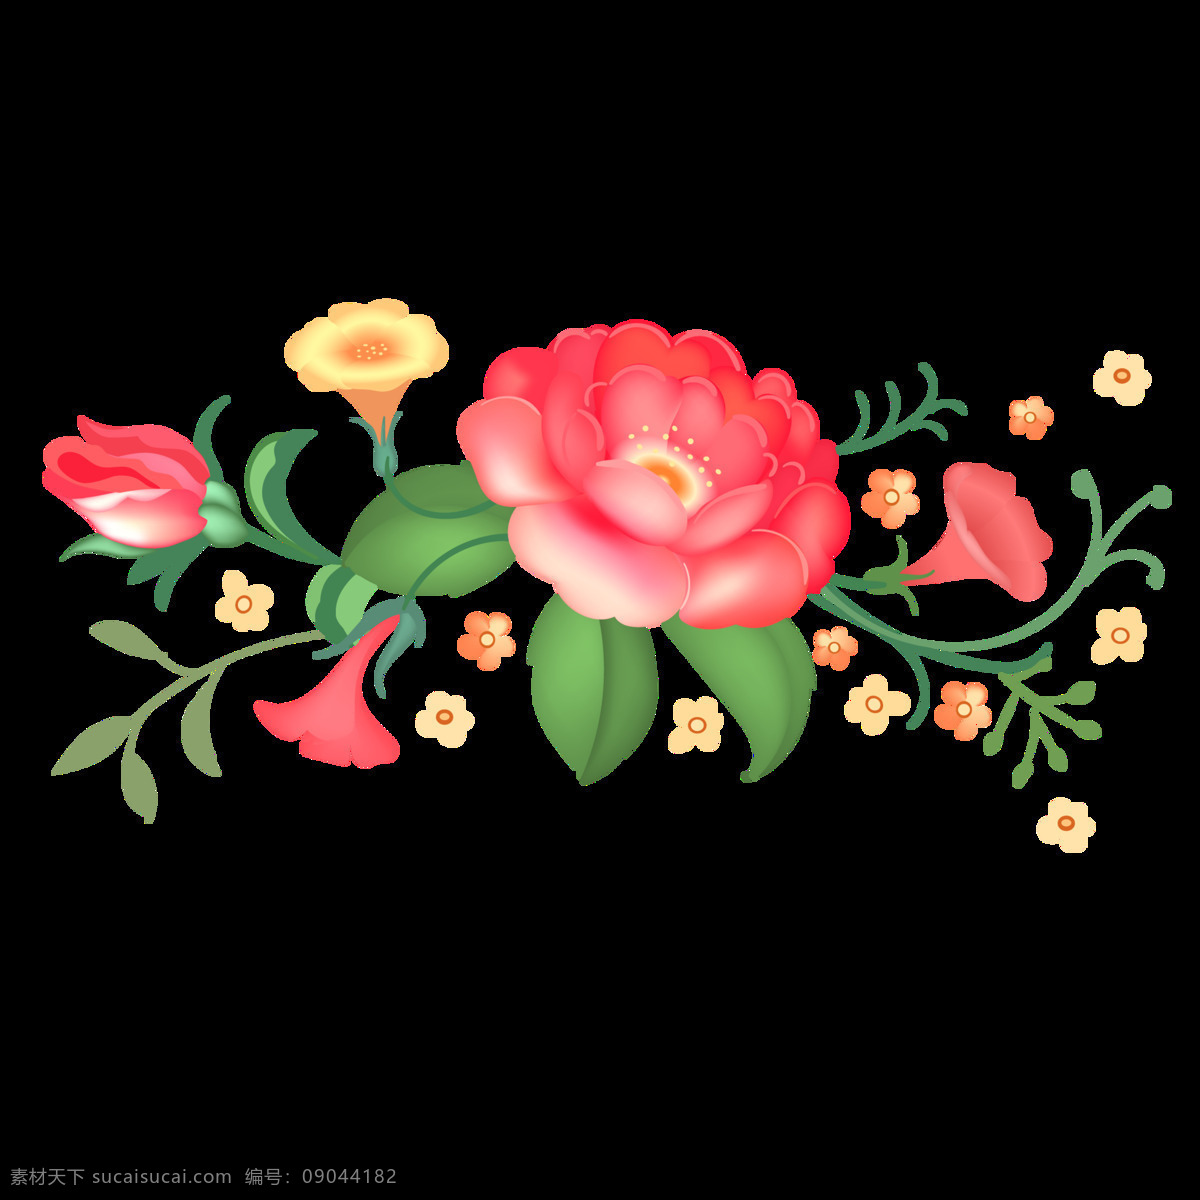 娇媚 鲜花 透明 装饰 抠图专用 设计素材